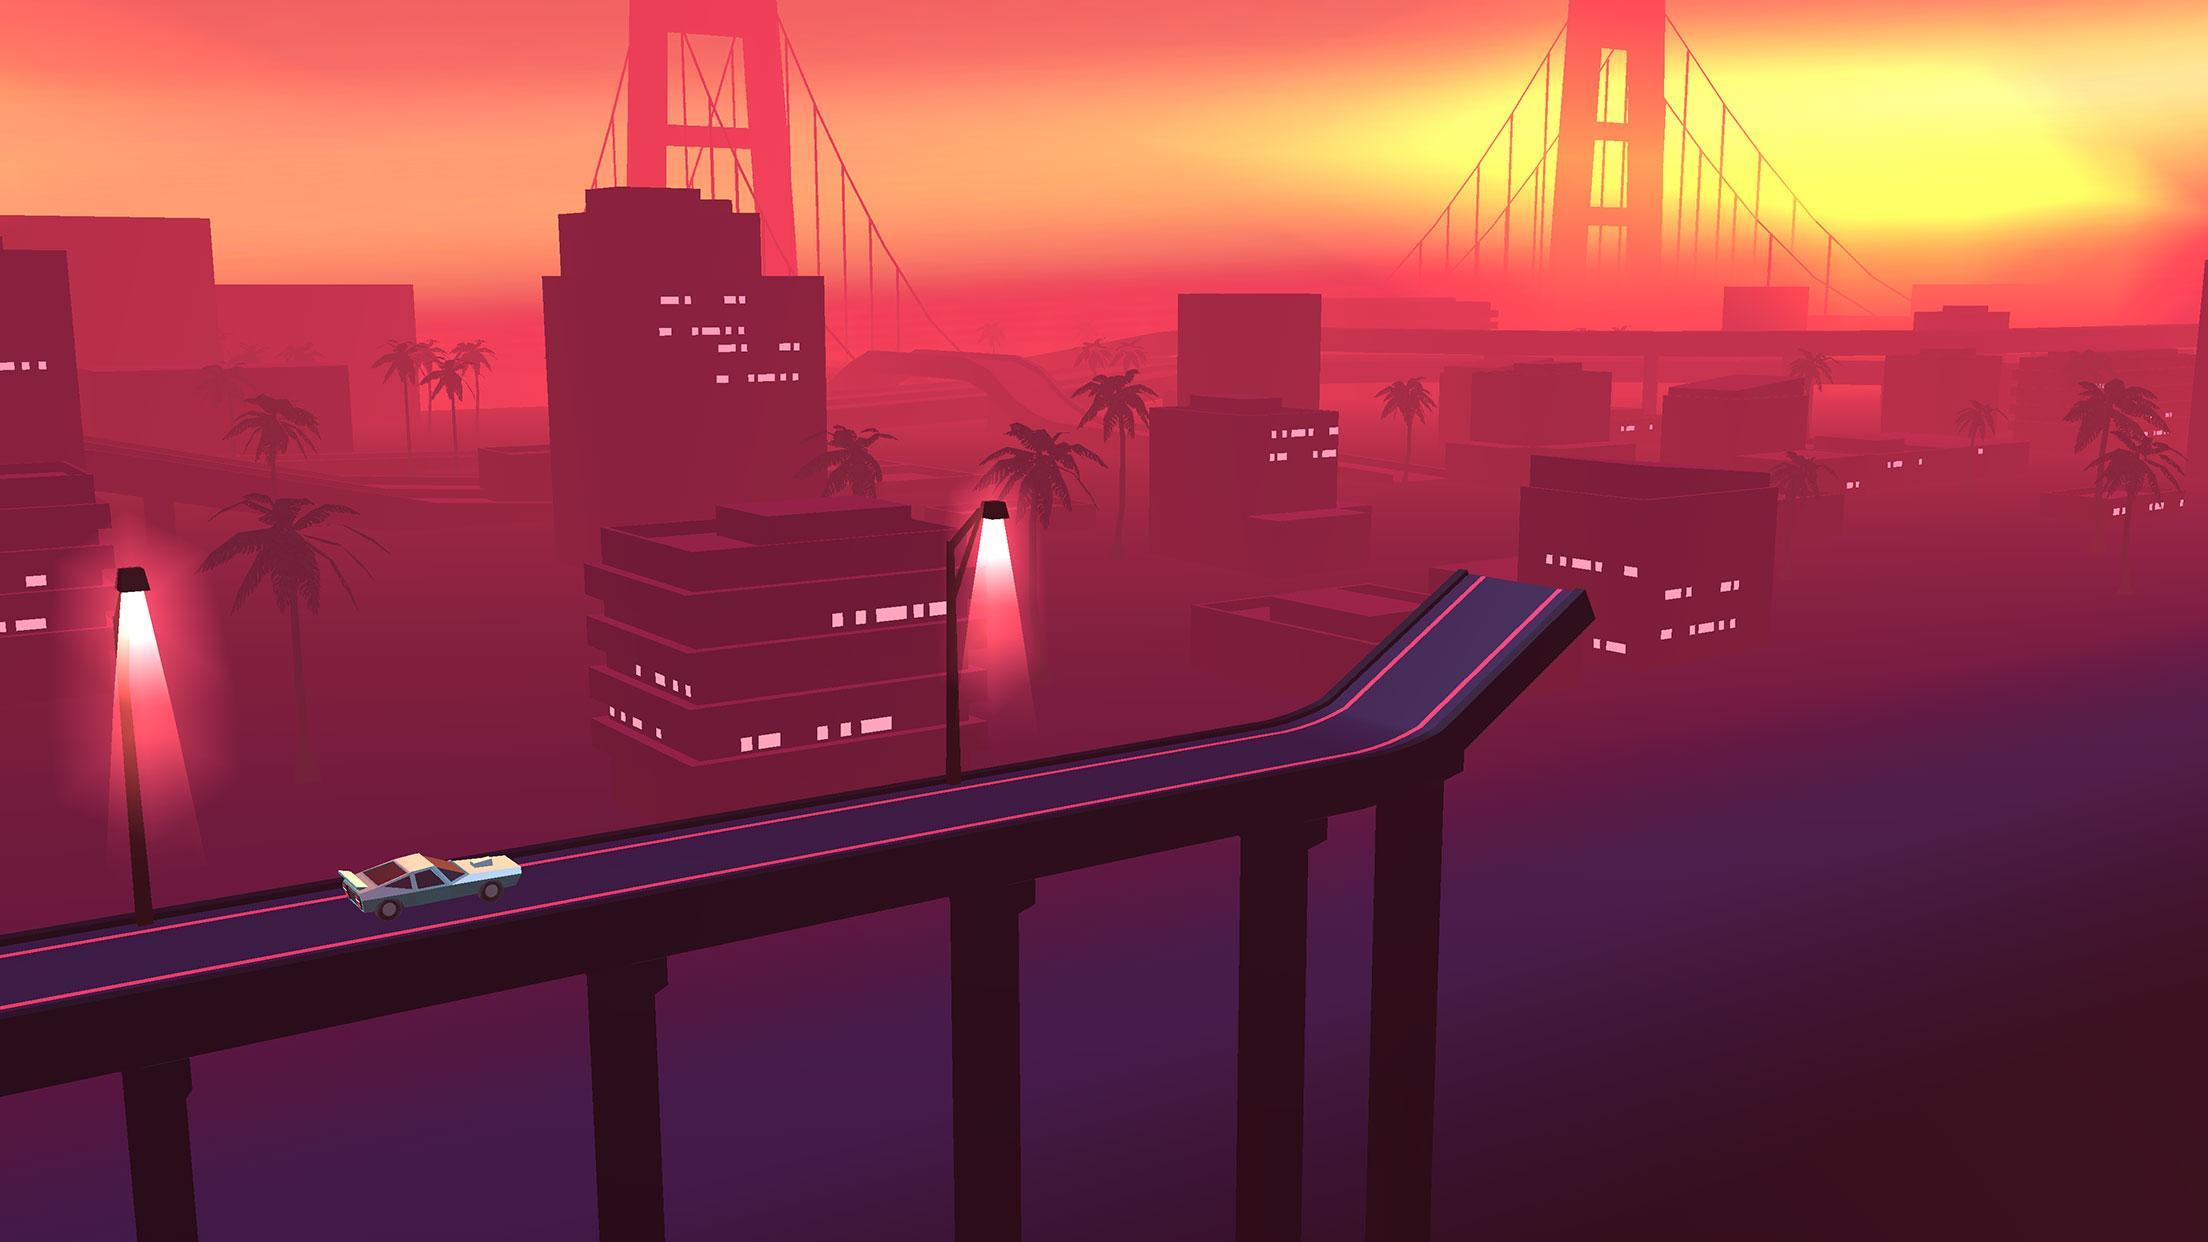 Screenshot 1 of salto da ponte 0.1.0